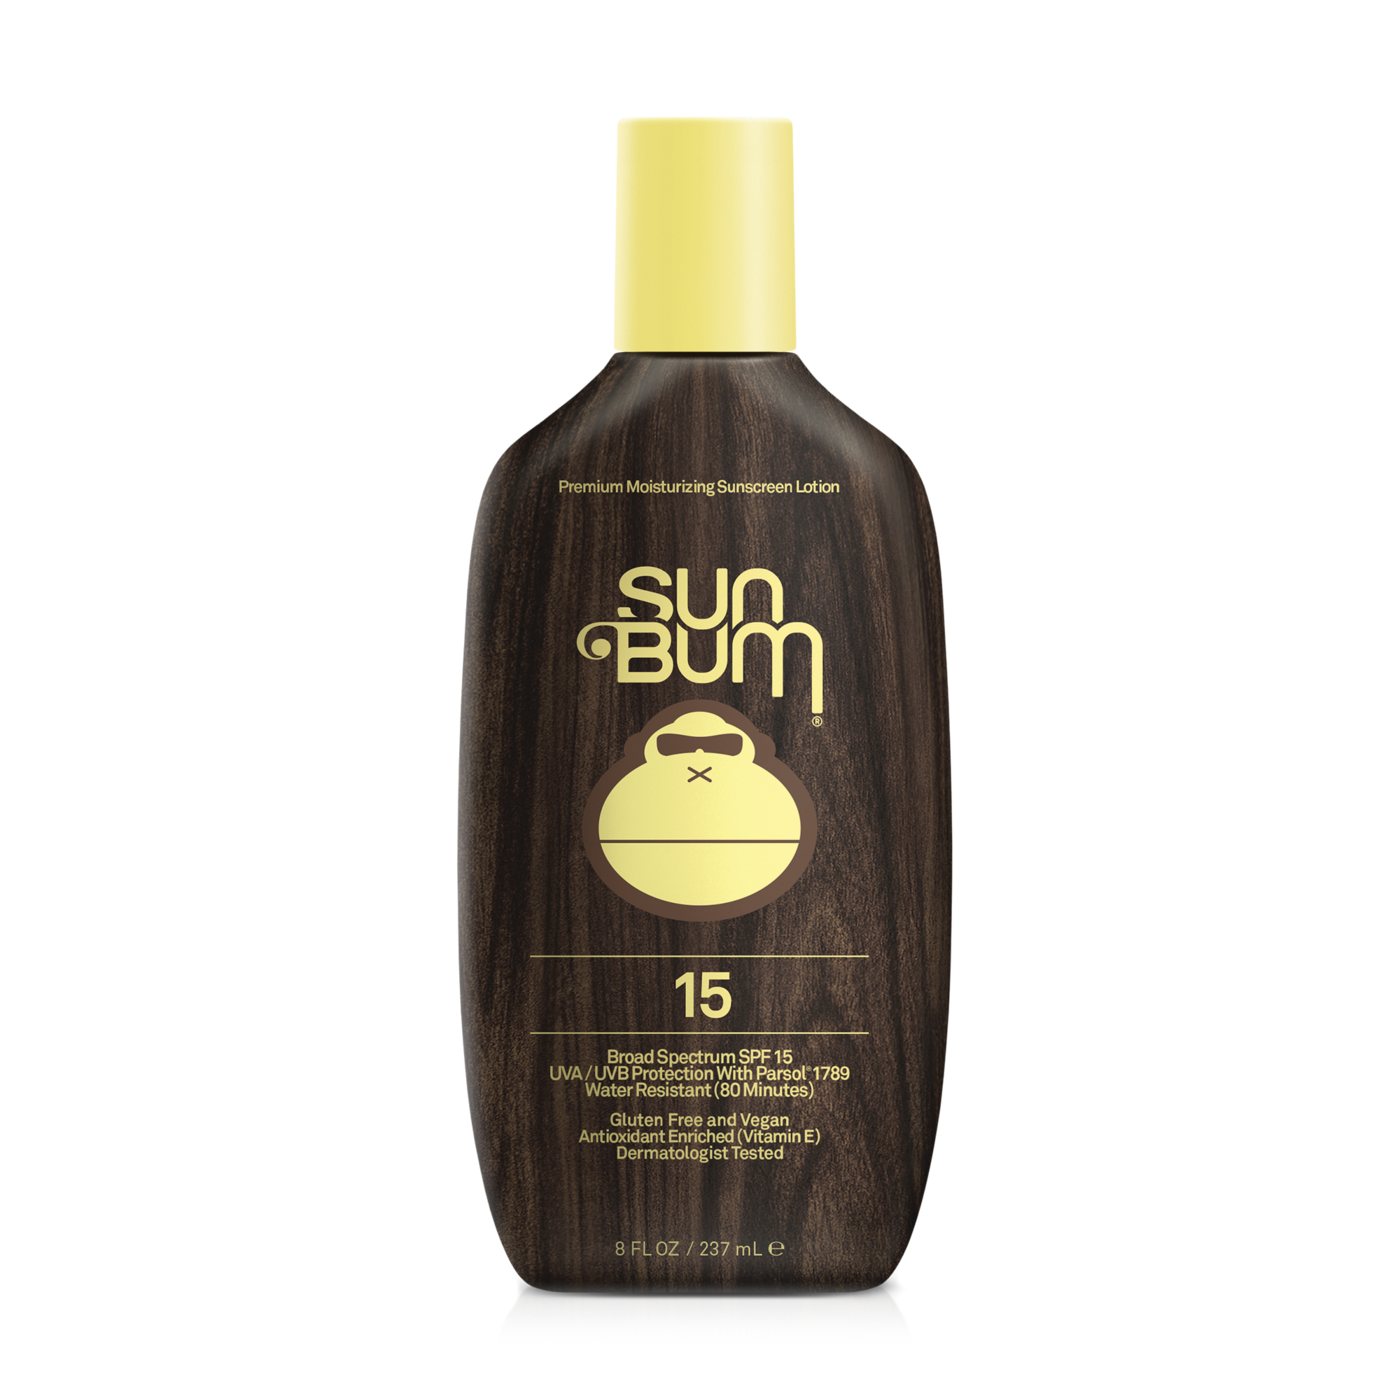 Sun Bum Sunscreen Lotion 15 SPF